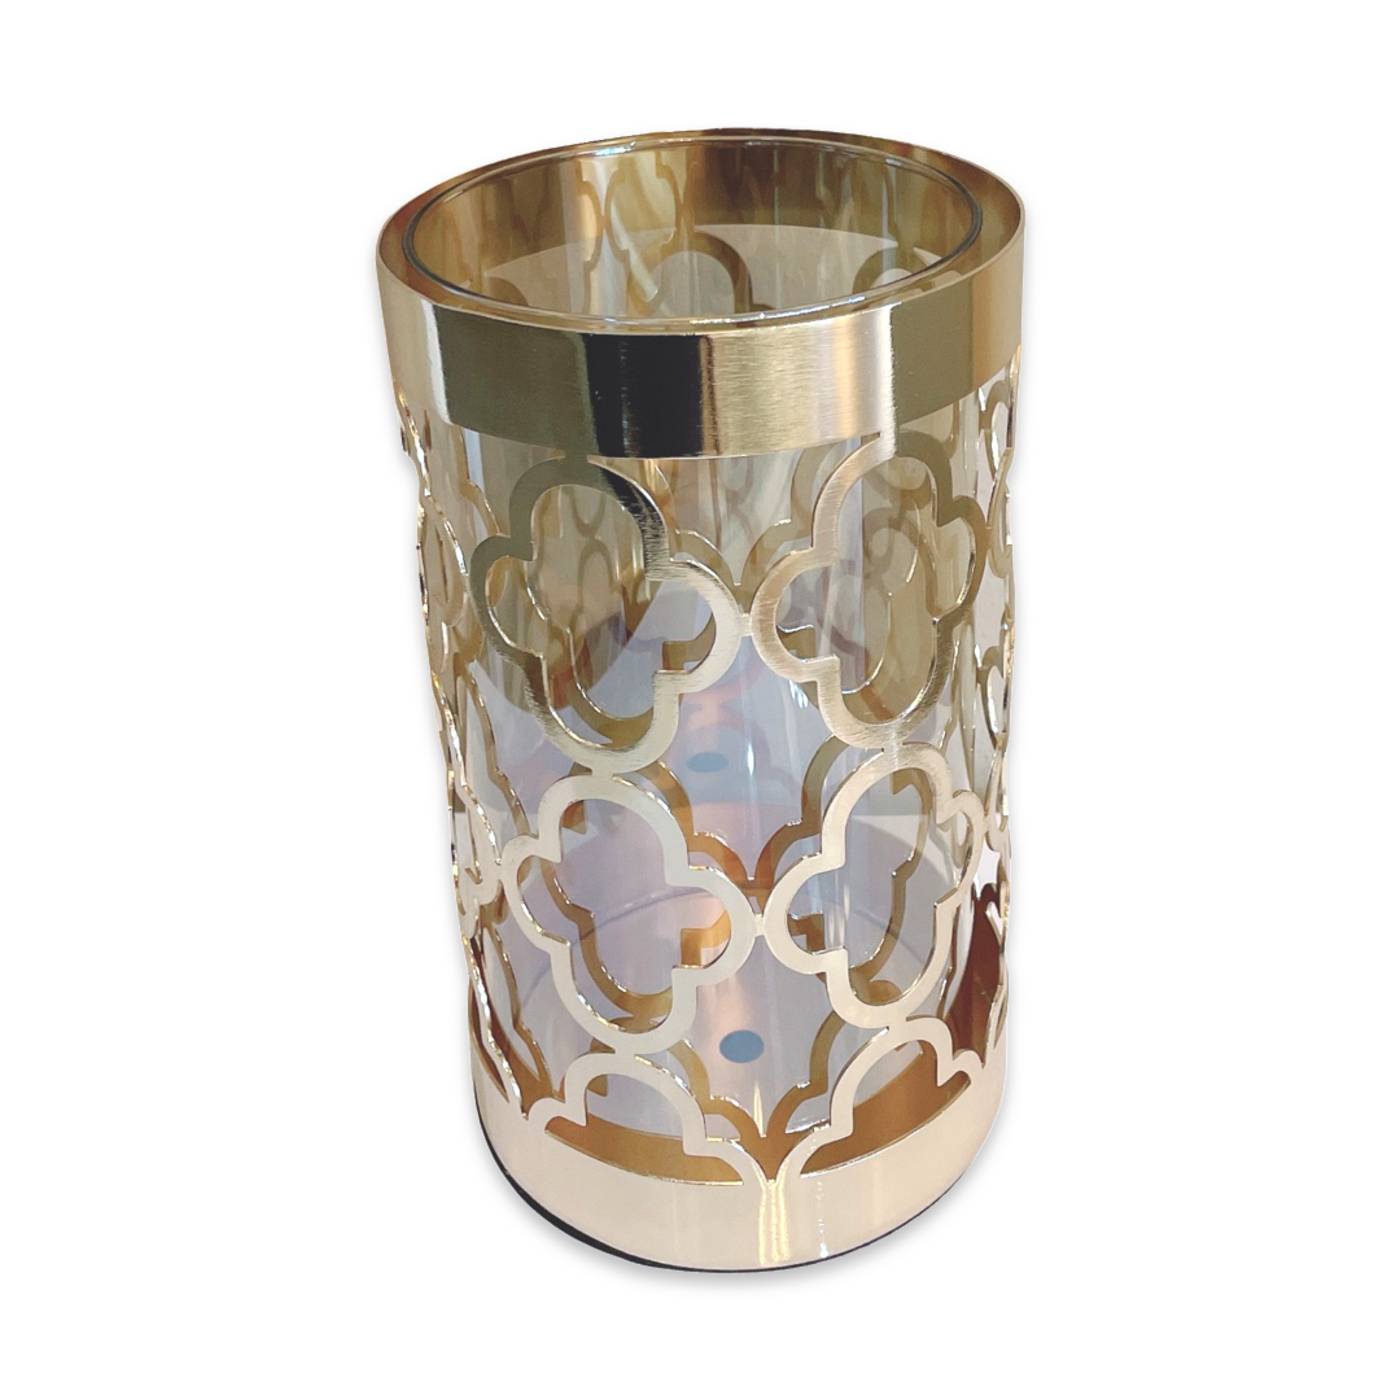 Loren Gold Vase Set